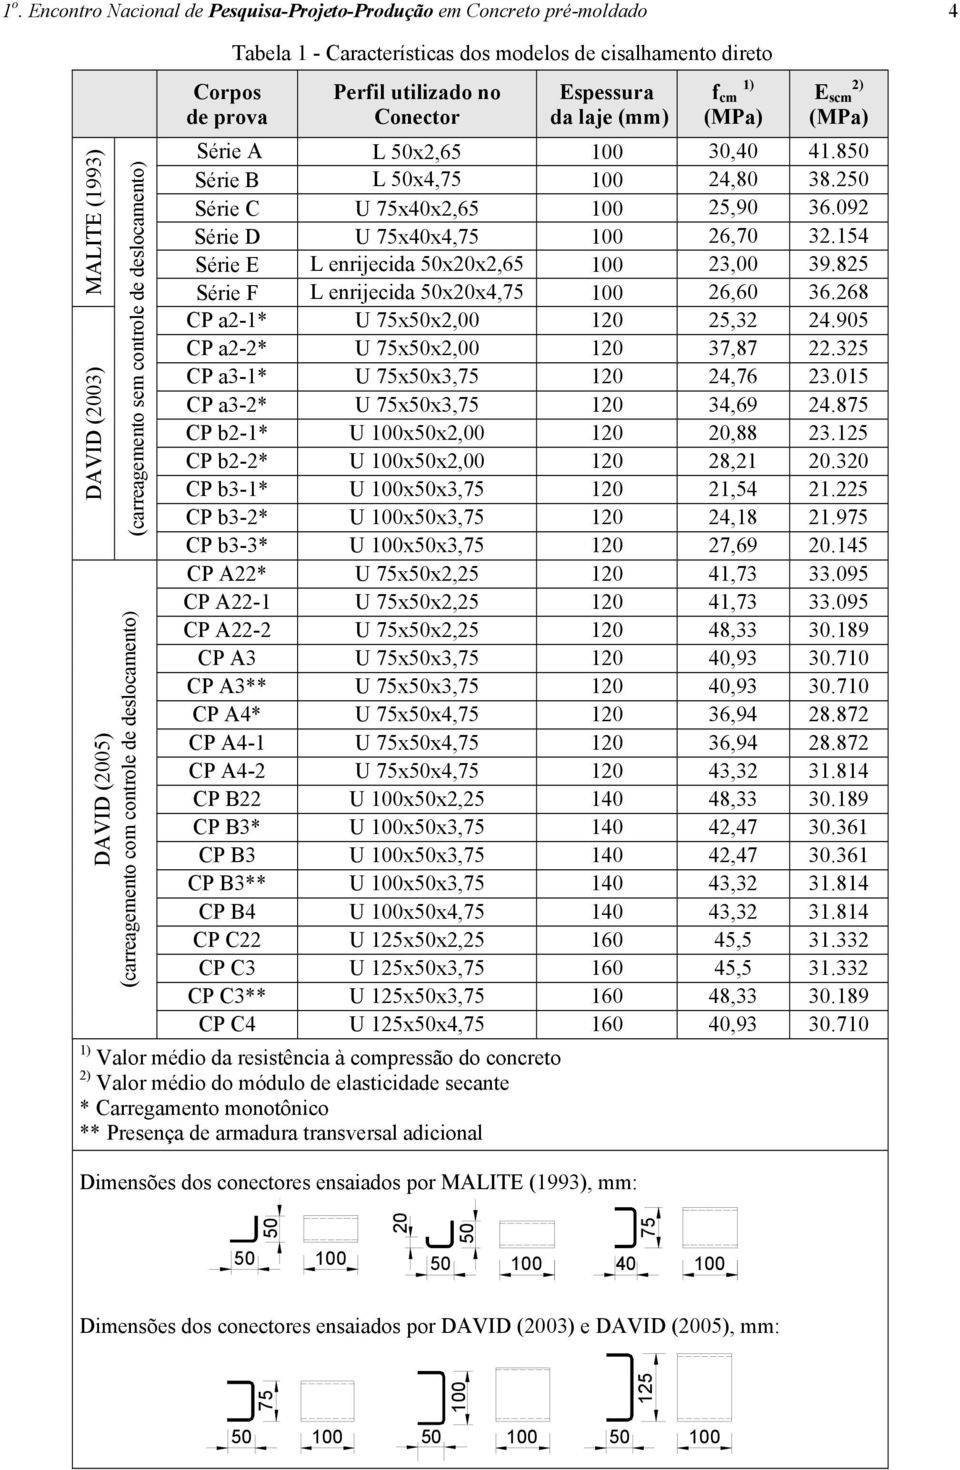 direto Perfil utilizado no Conector Espessura da laje (mm) f cm 1) (MPa) E scm 2) (MPa) Série A L 5x2,65 3,4 41.85 Série B L 5x4,75 24,8 38.25 Série C U 75x4x2,65 25,9 36.